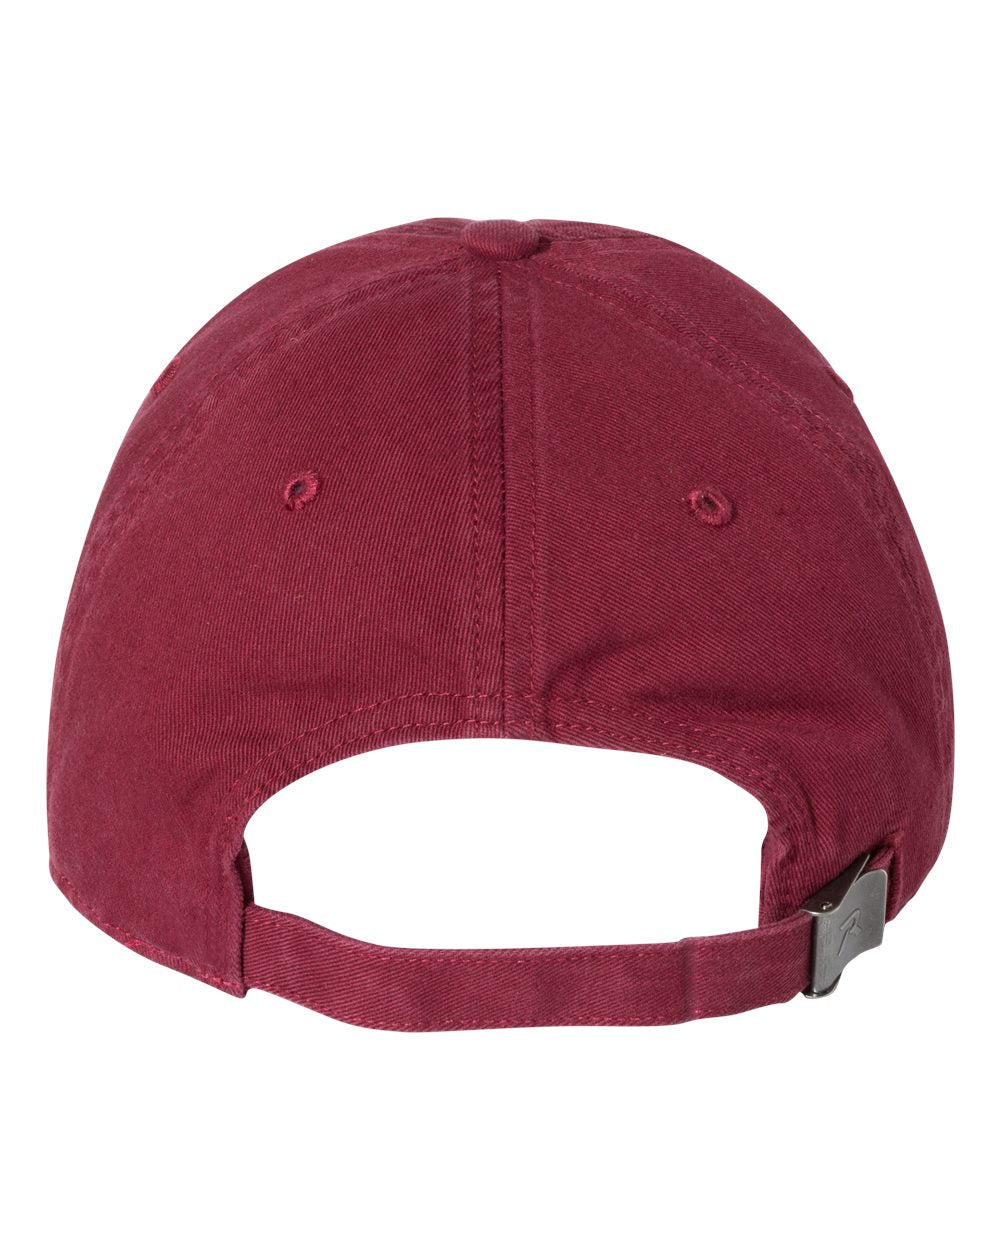 Richardson-Washed Custom Chino Caps, Cardinal